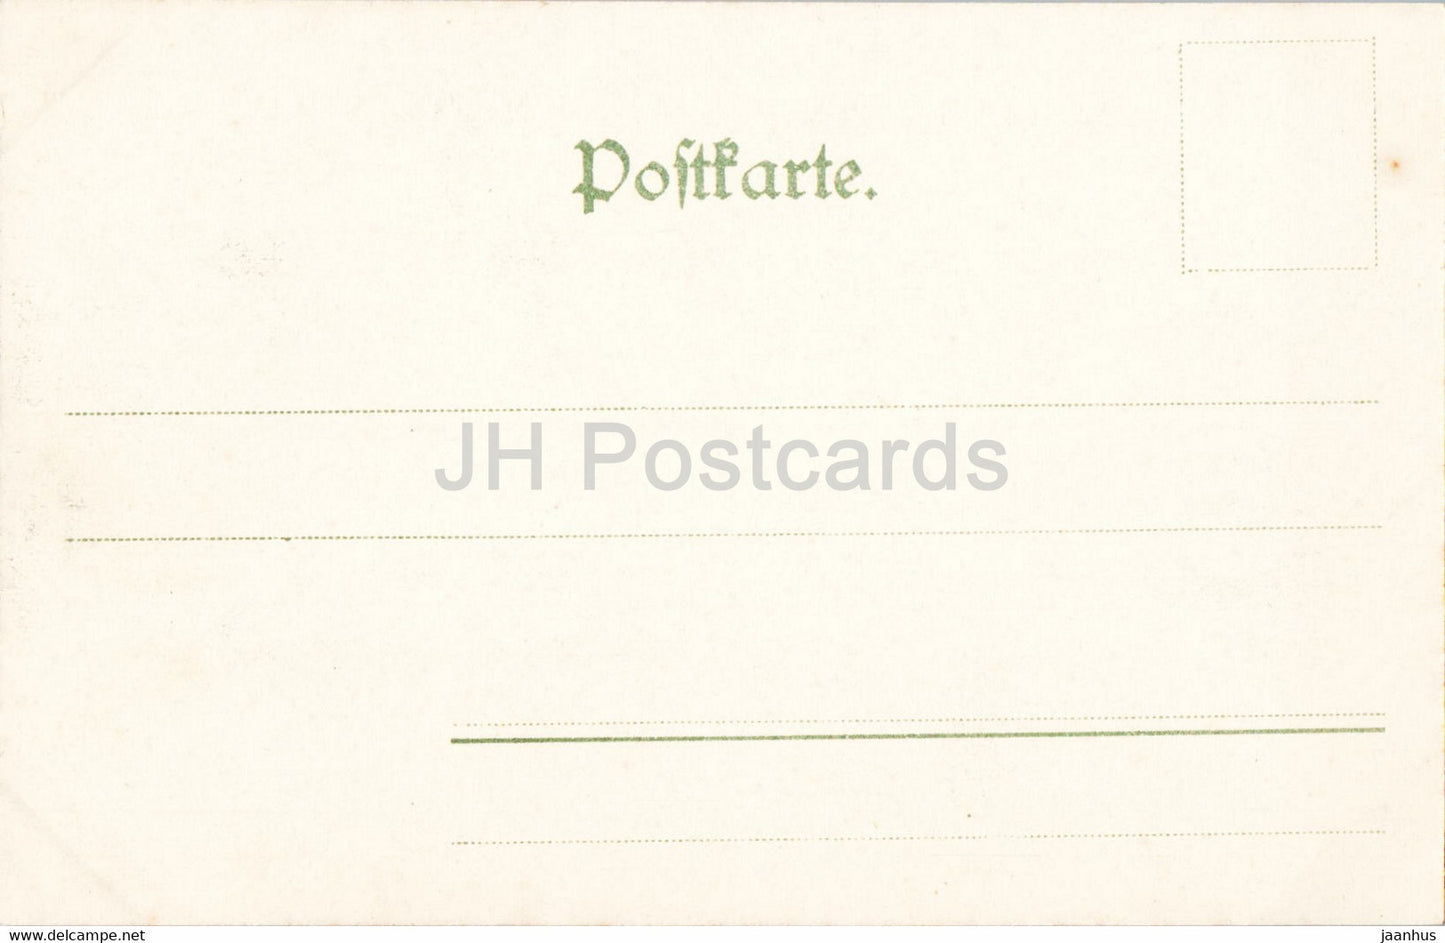 Die Gansfelsen - Bastei - Sachs Schweiz - 198 - old postcard - Germany - unused